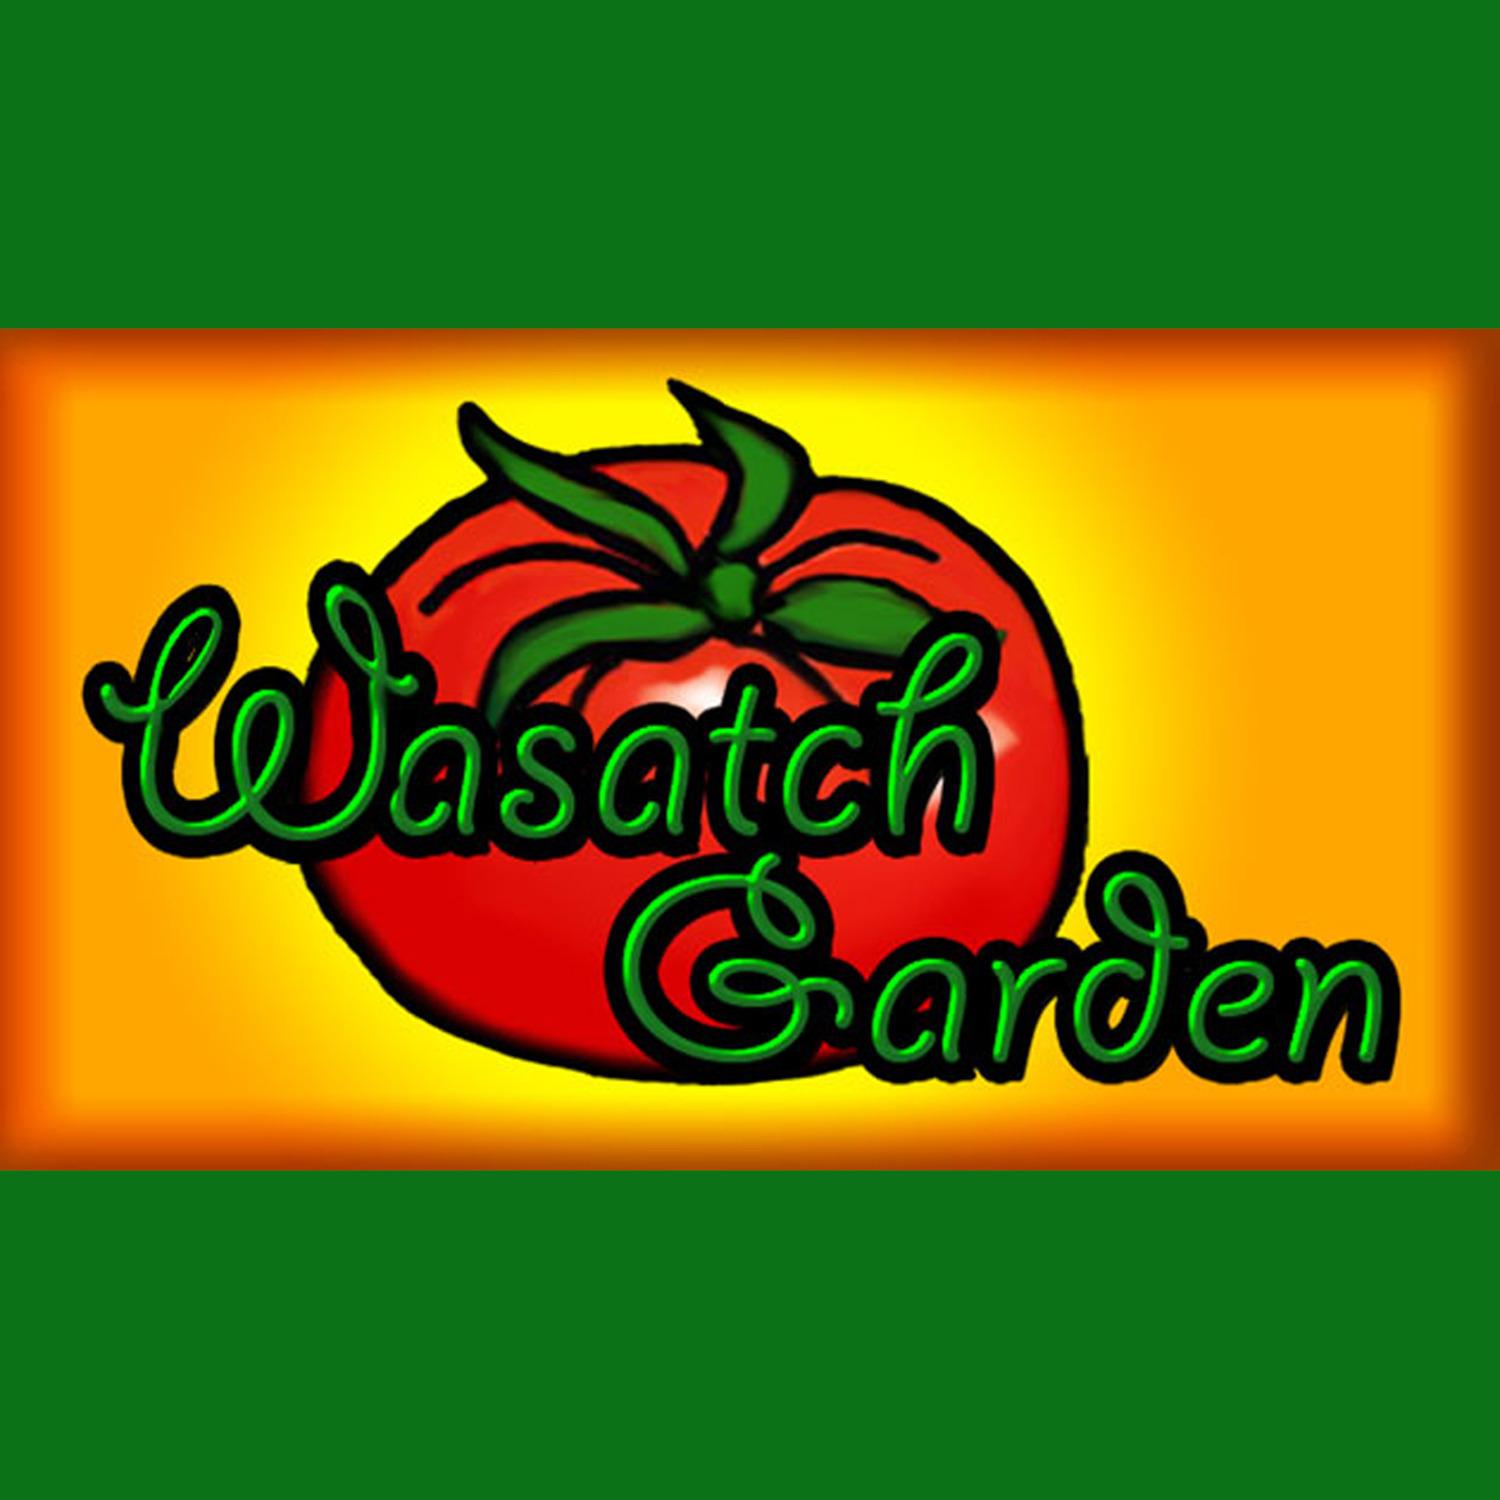 Wasatch Garden